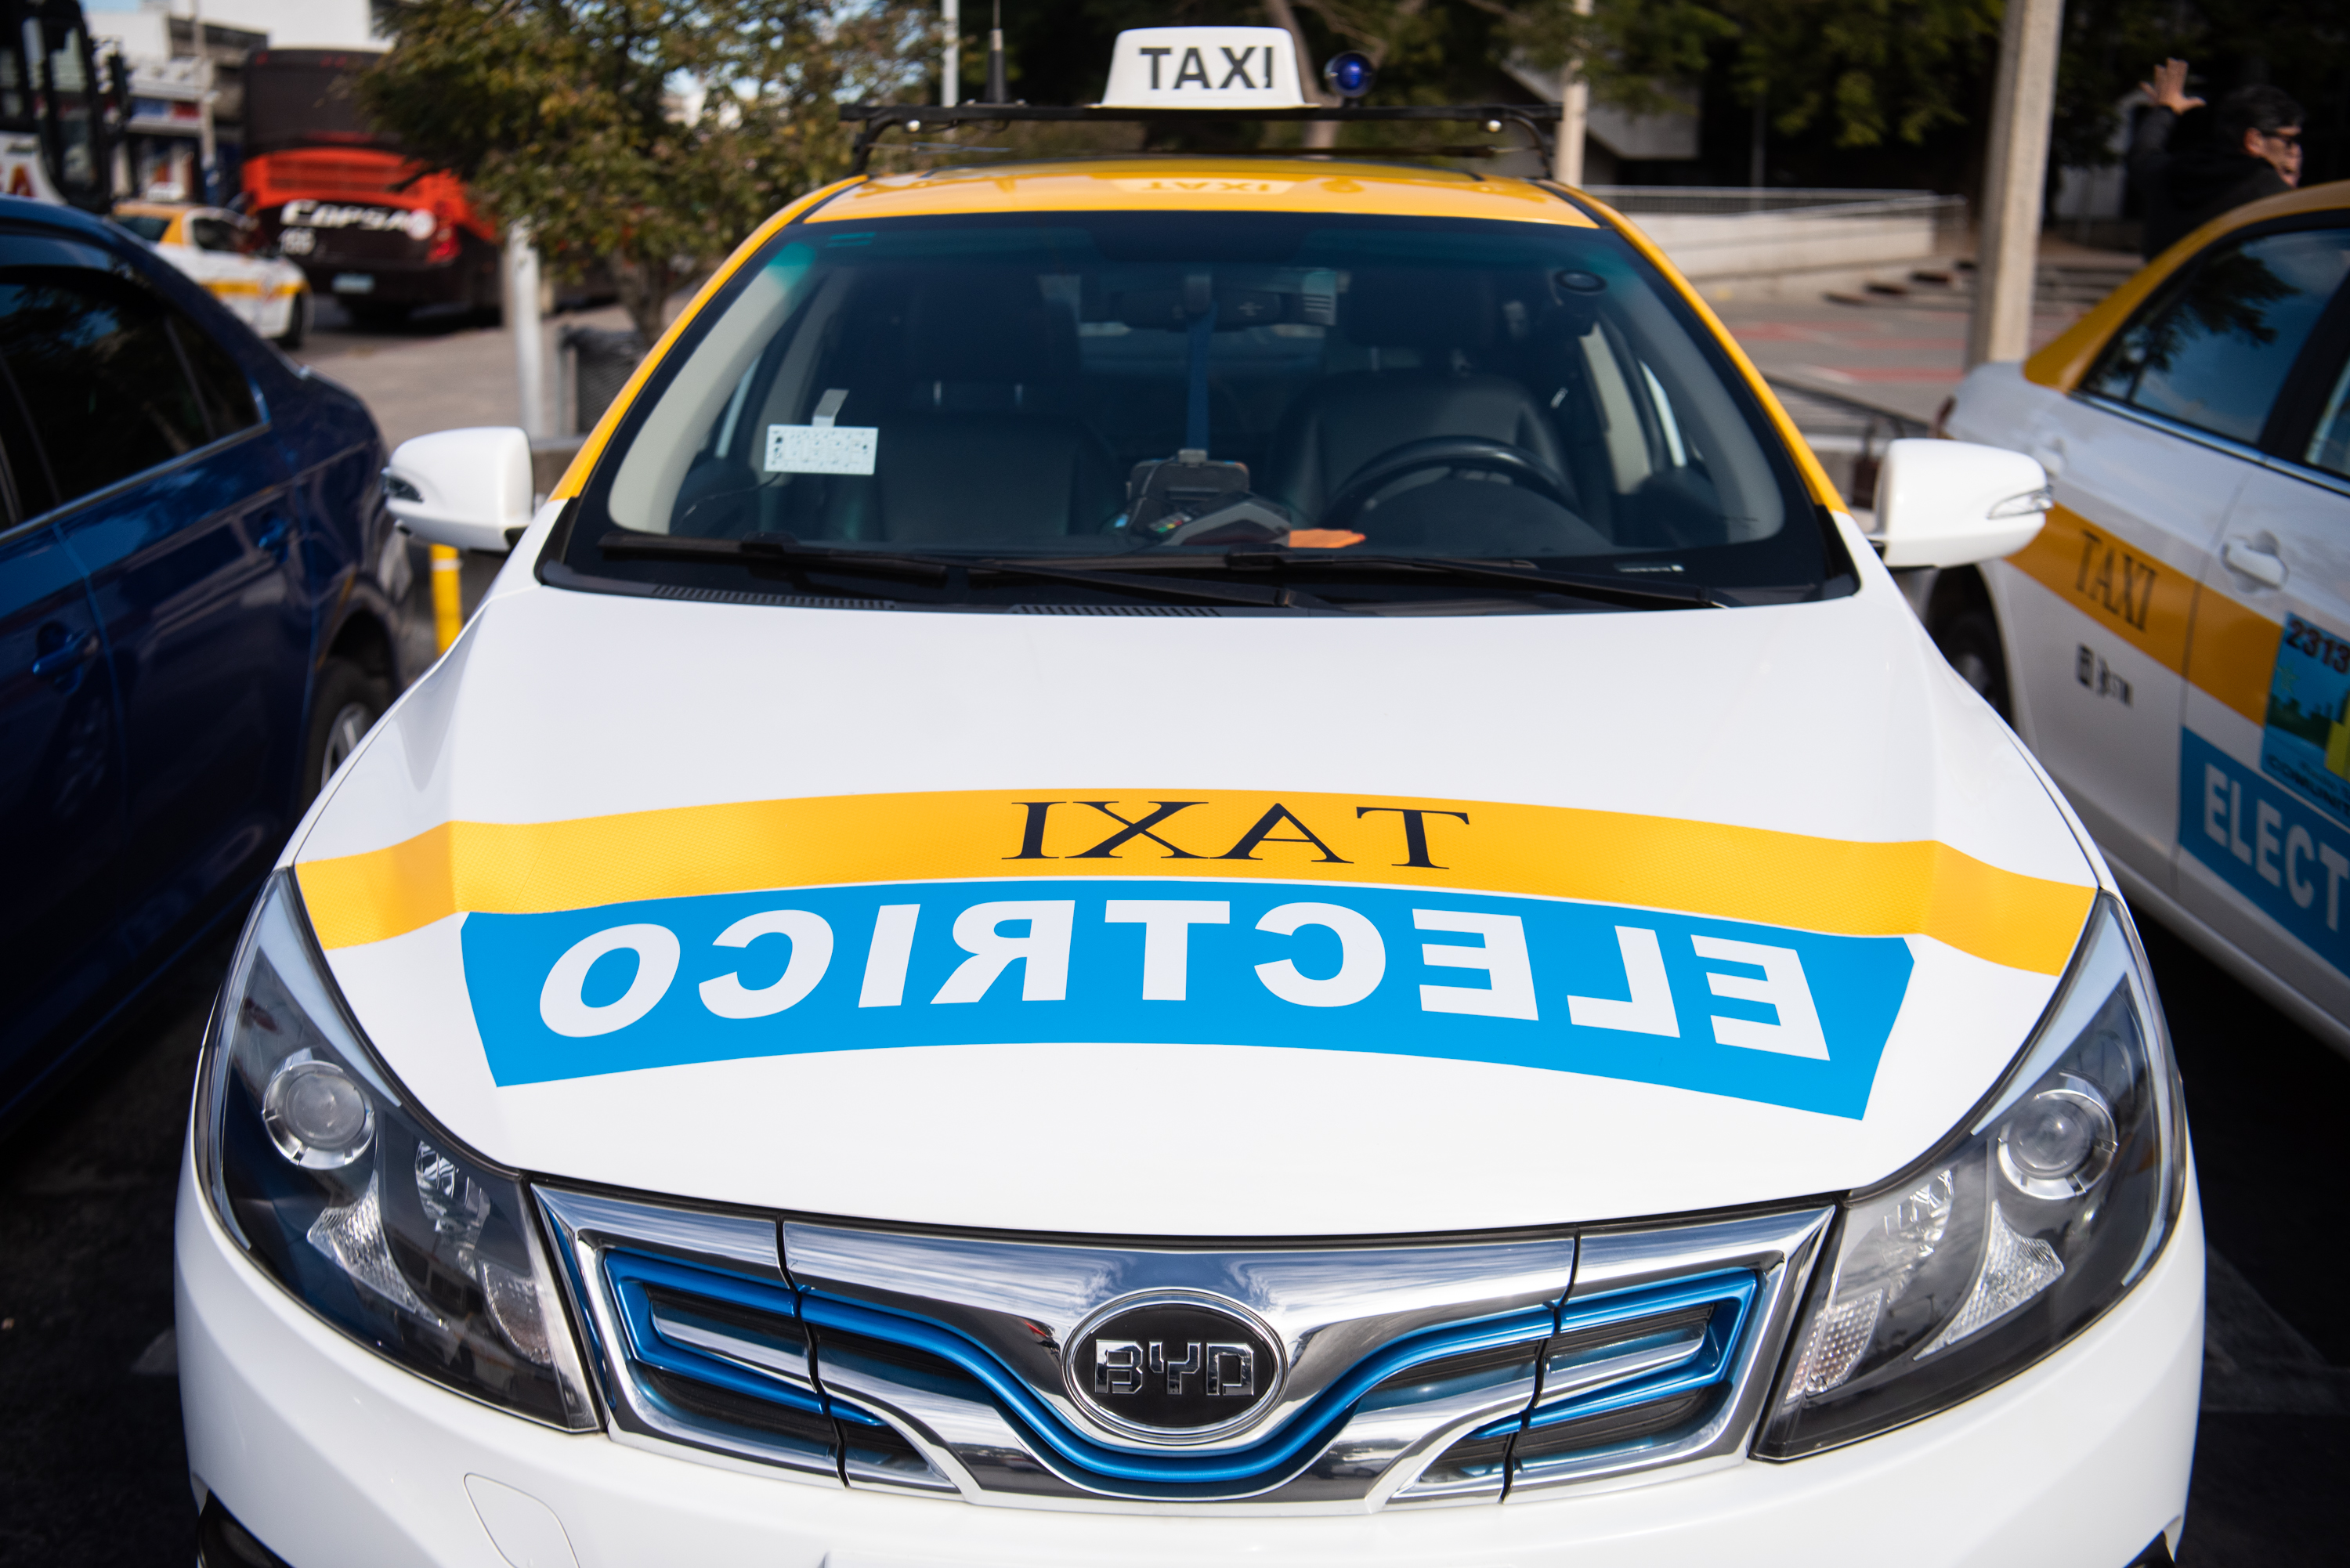 Presentación de nuevos taxis eléctricos en el Intercambiador Belloni